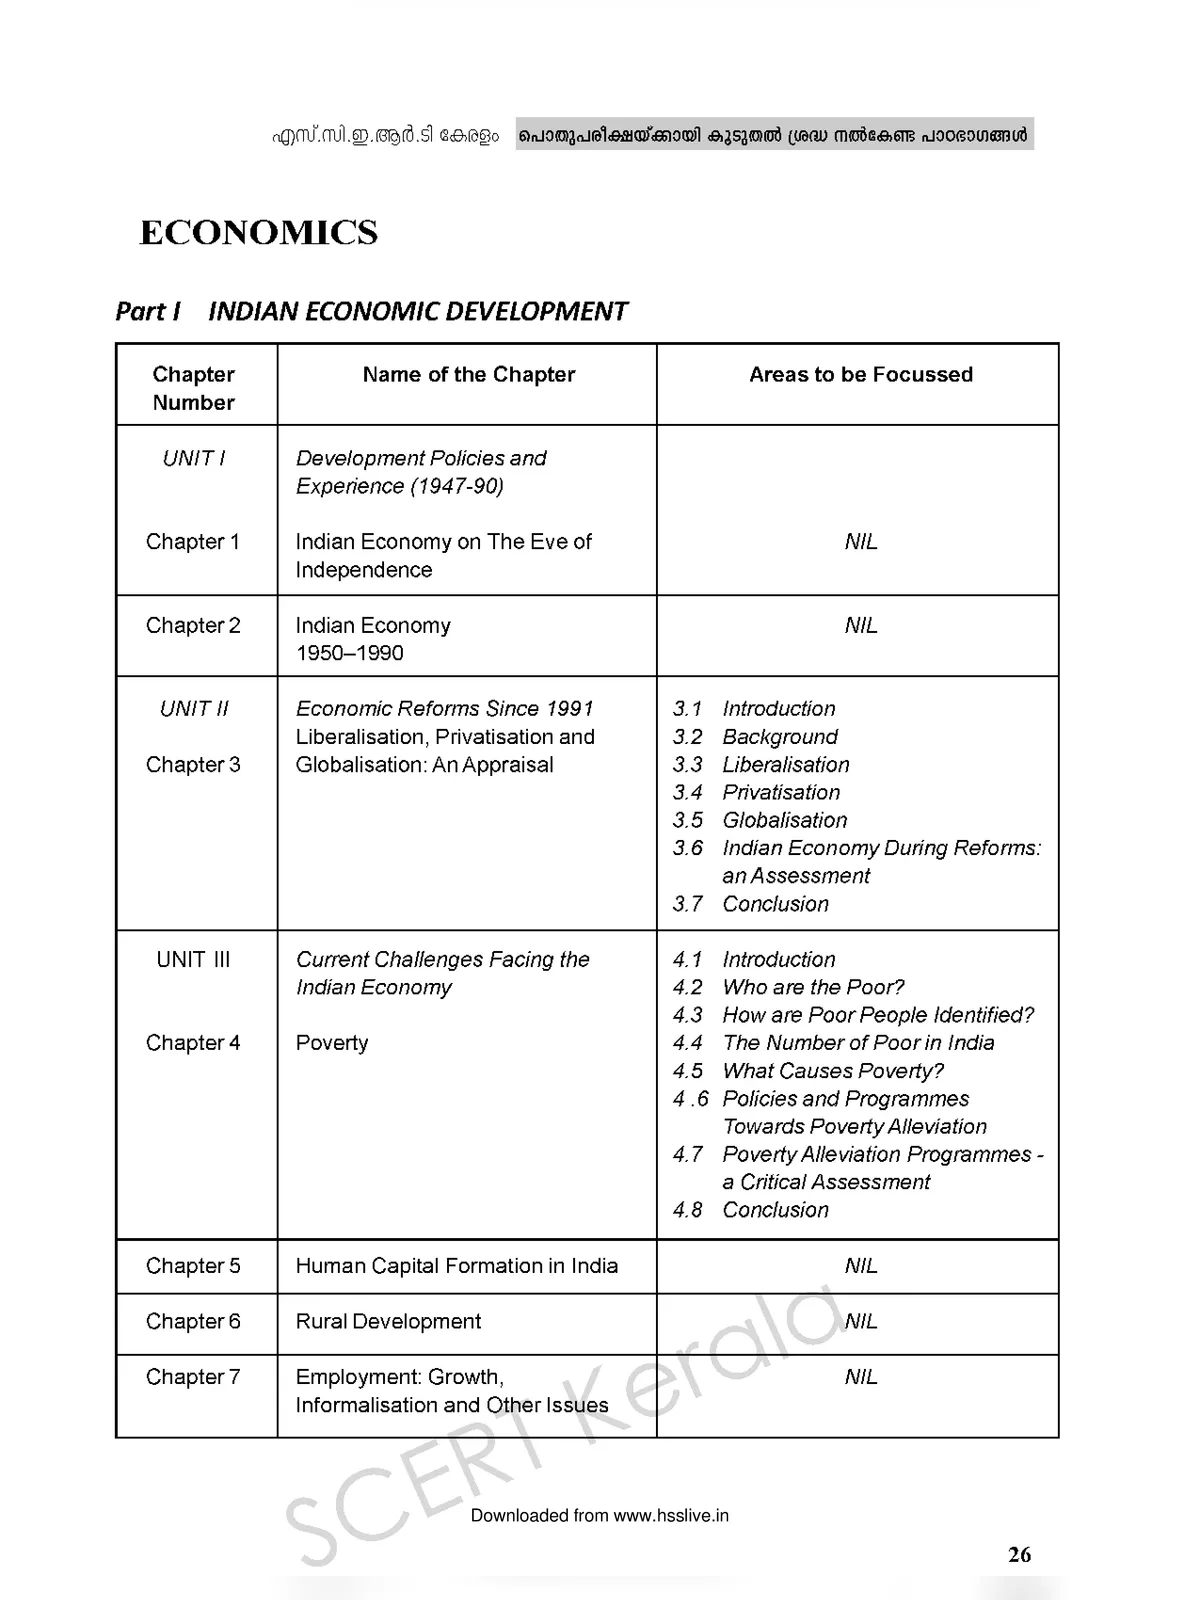 Plus One Economics Focus Area Notes (SCERT Kerala)